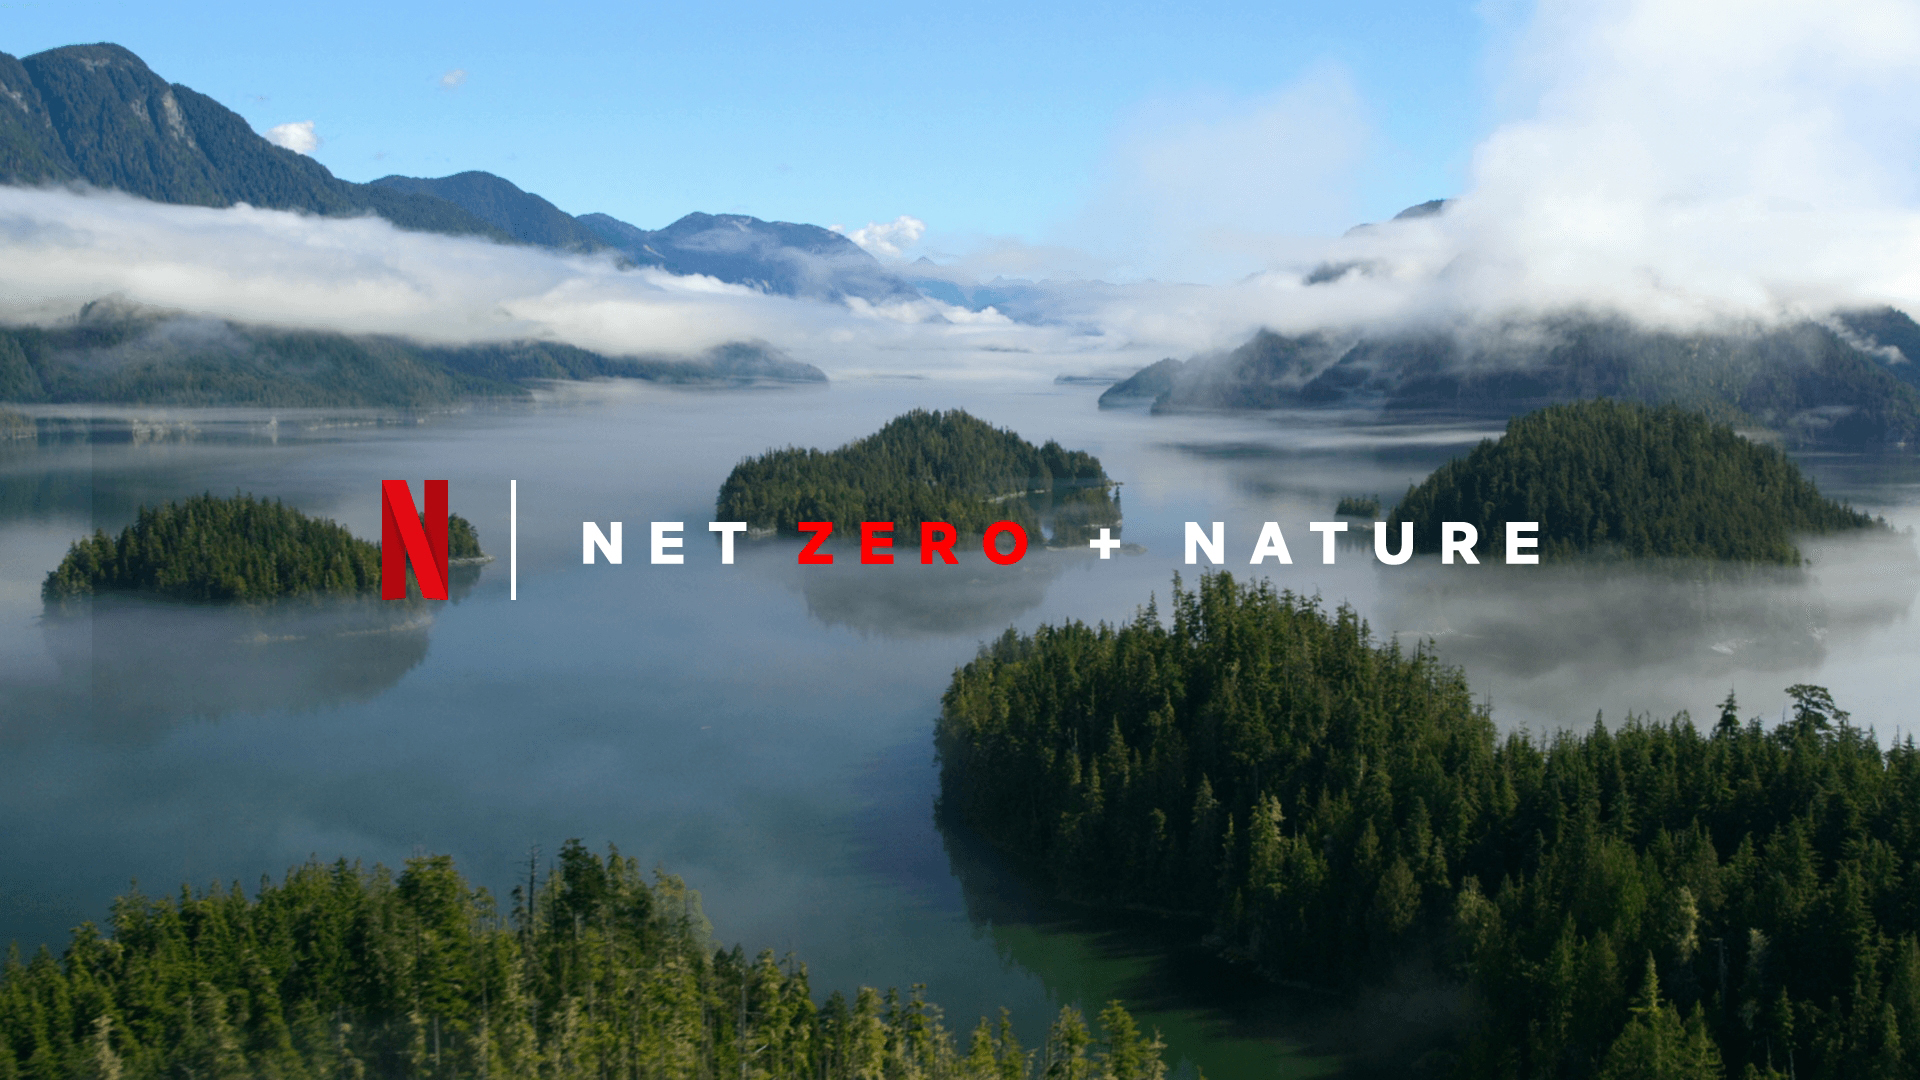 Netflix ประกาศแผนลดการปล่อยมลพิษ มุ่งเป้าสถานะ ‘Net Zero’ ภายในสิ้นปี 2022